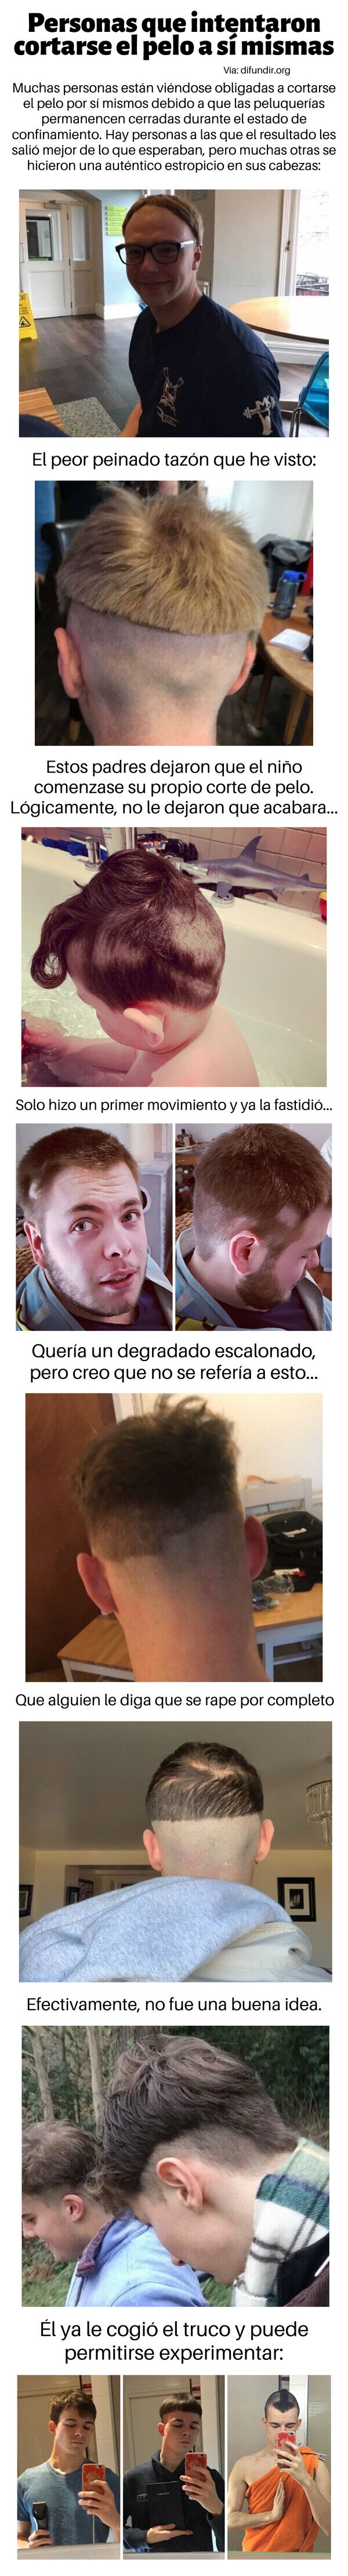 Meme_otros - Personas que intentaron cortarse el pelo a sí mismas